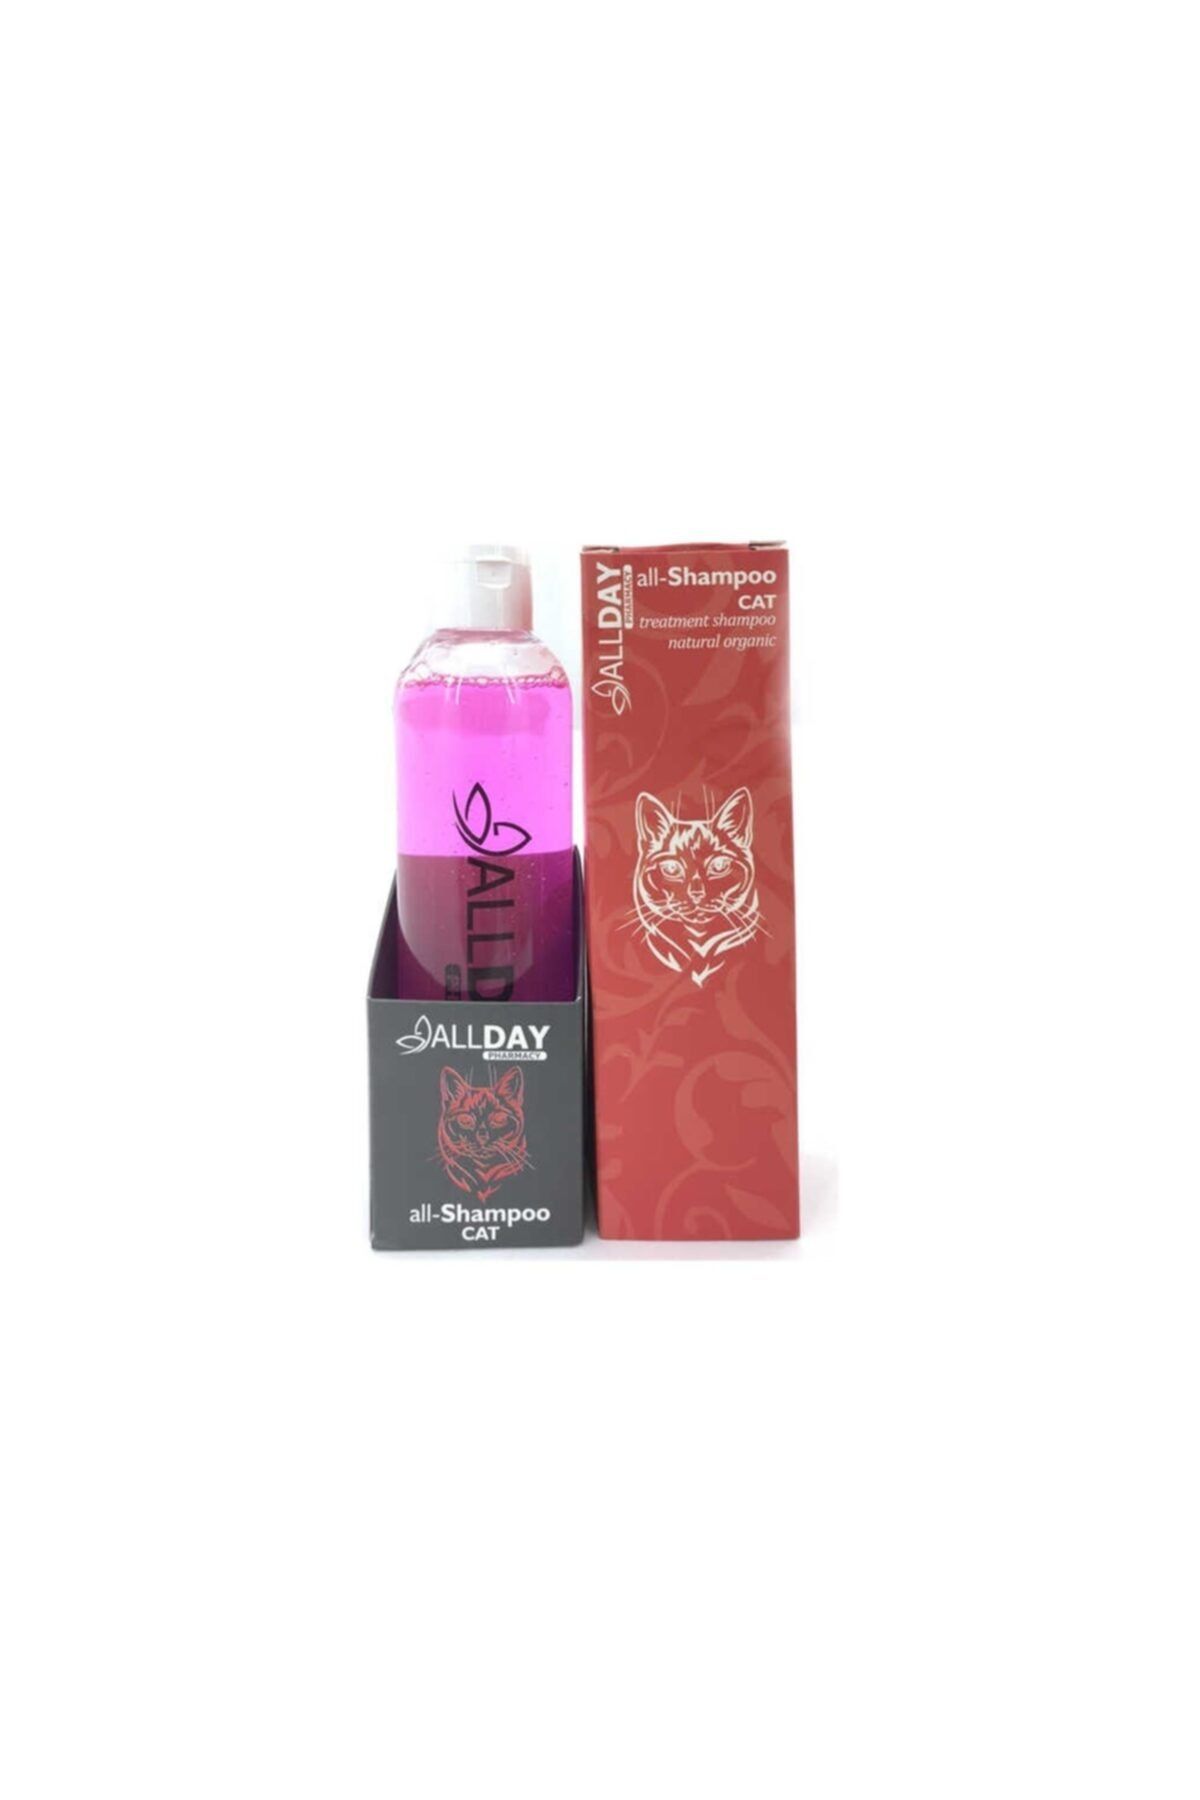 ALLDAY All-174242 All-shampoo Cat Natural Organic Kedi Şampuanı 250 Ml